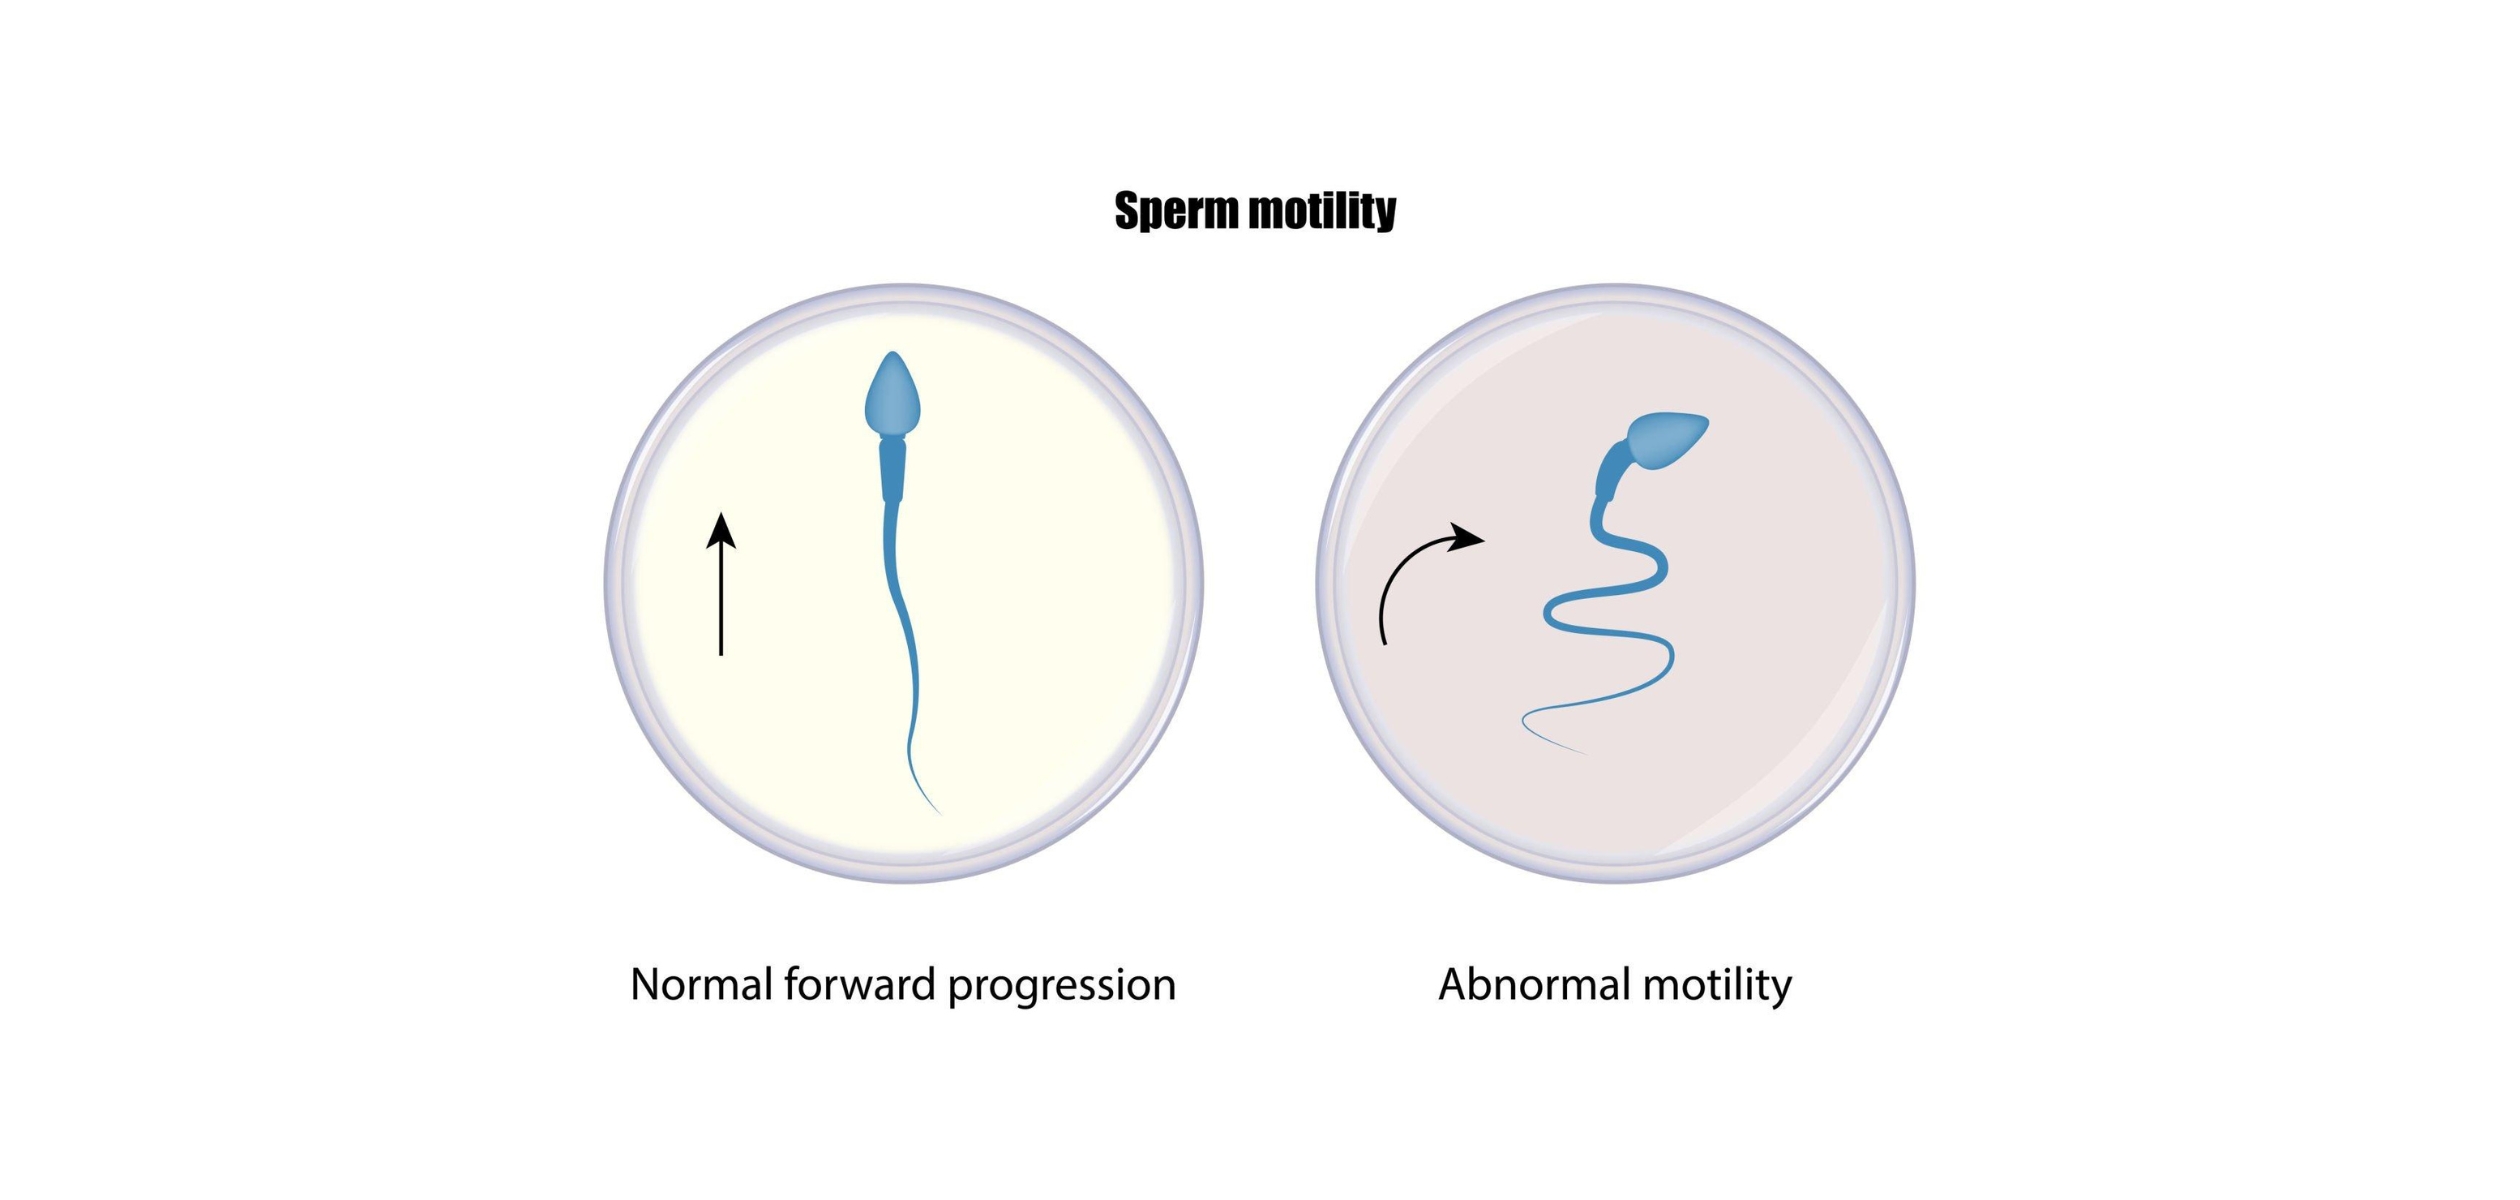 Low sperm motility